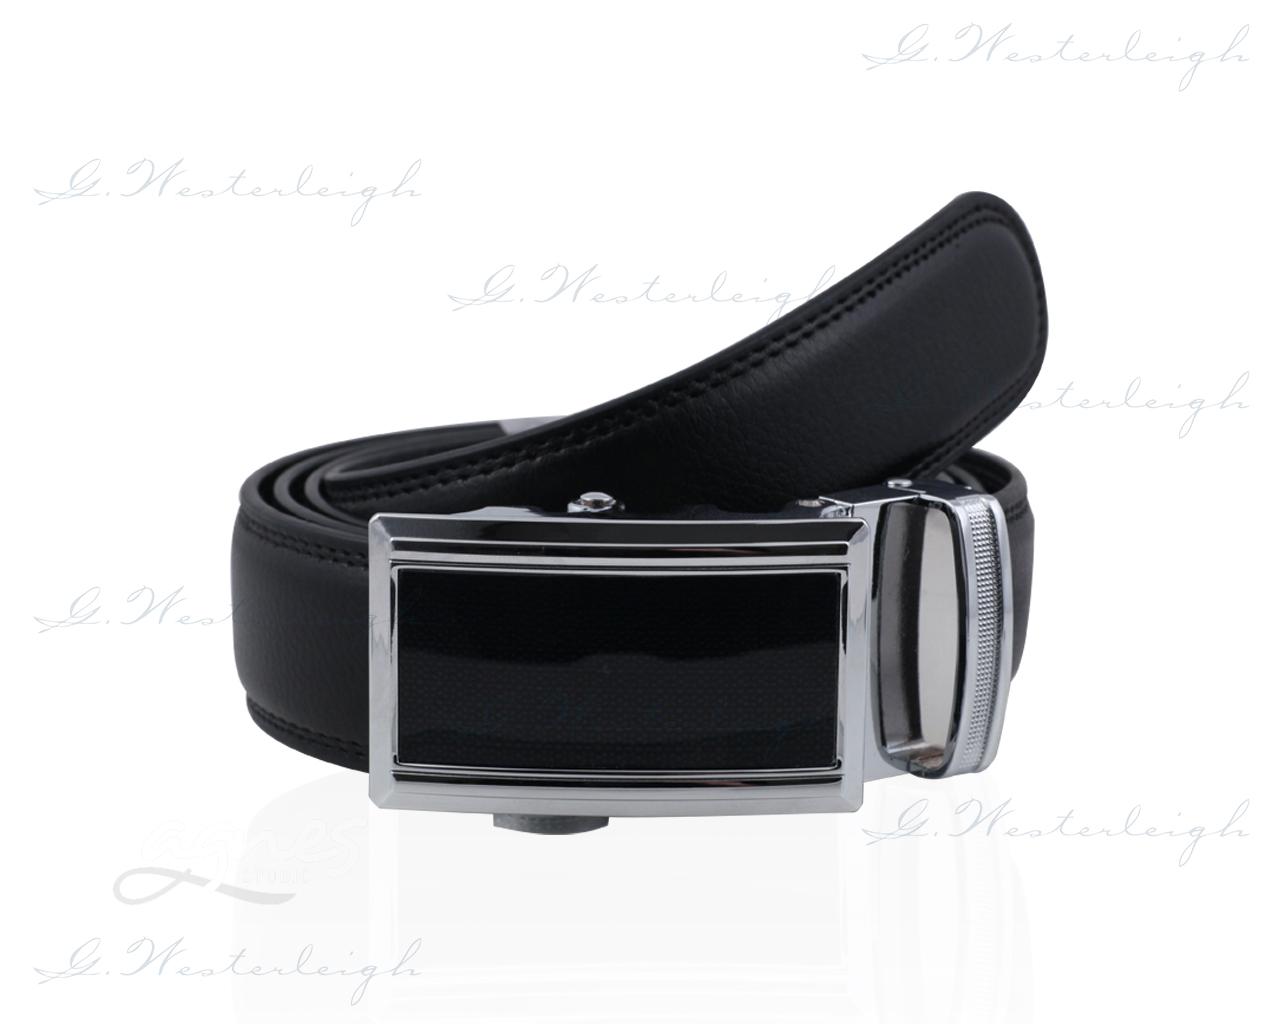 kozeny-pasek-cerny-vl3006-leather-belt